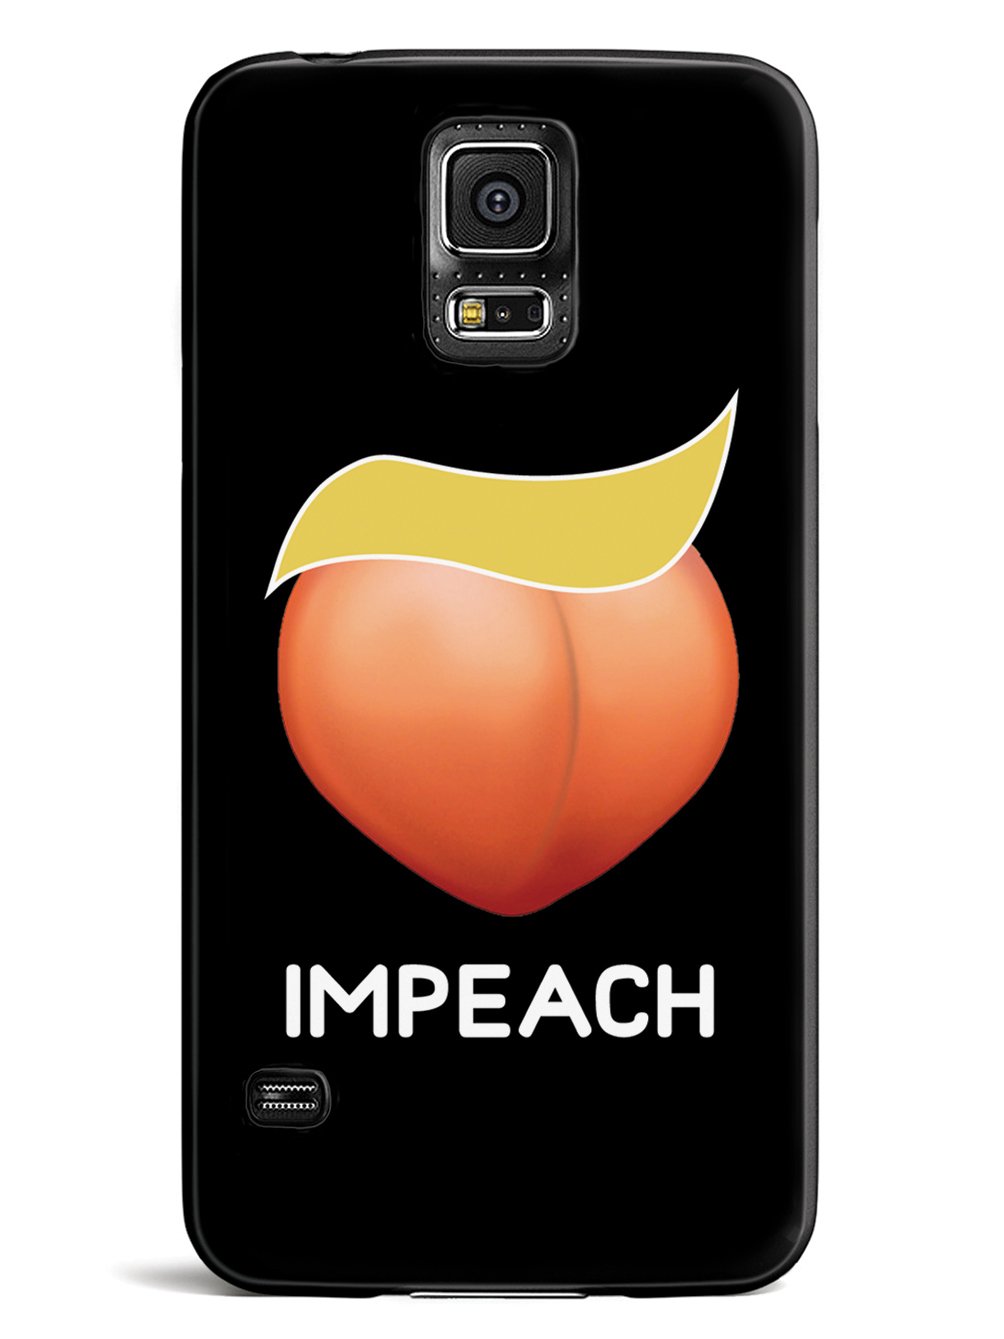 Impeach Emoji - Black Case - pipercleo.com